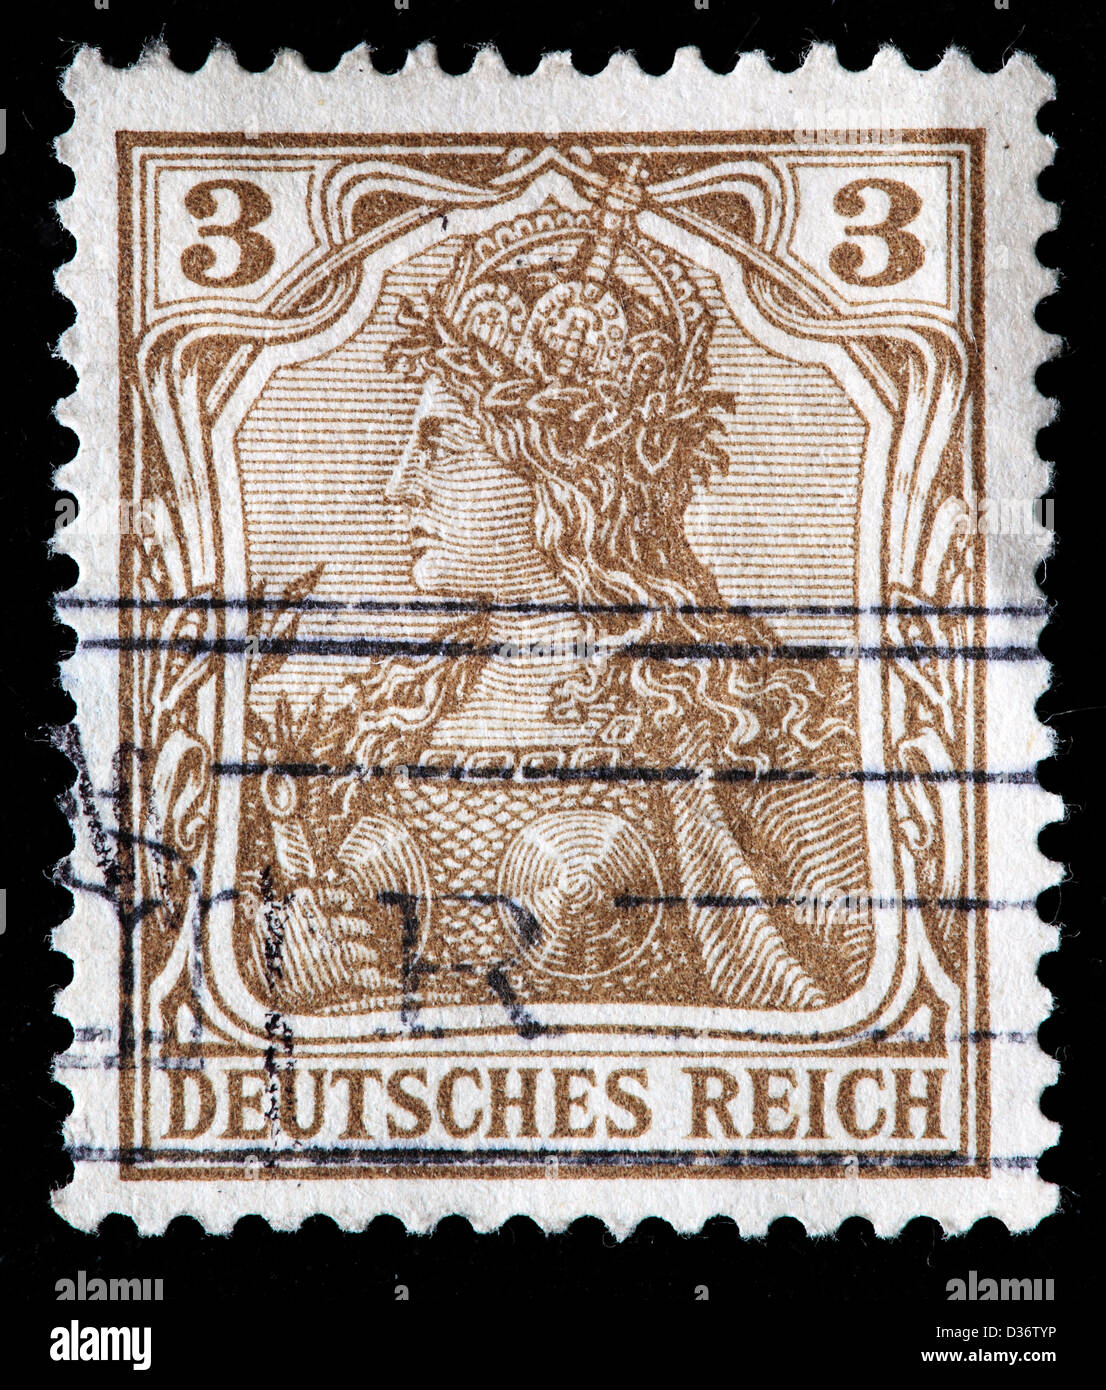 Germania, Briefmarke, Deutschland, 1902 Stockfoto